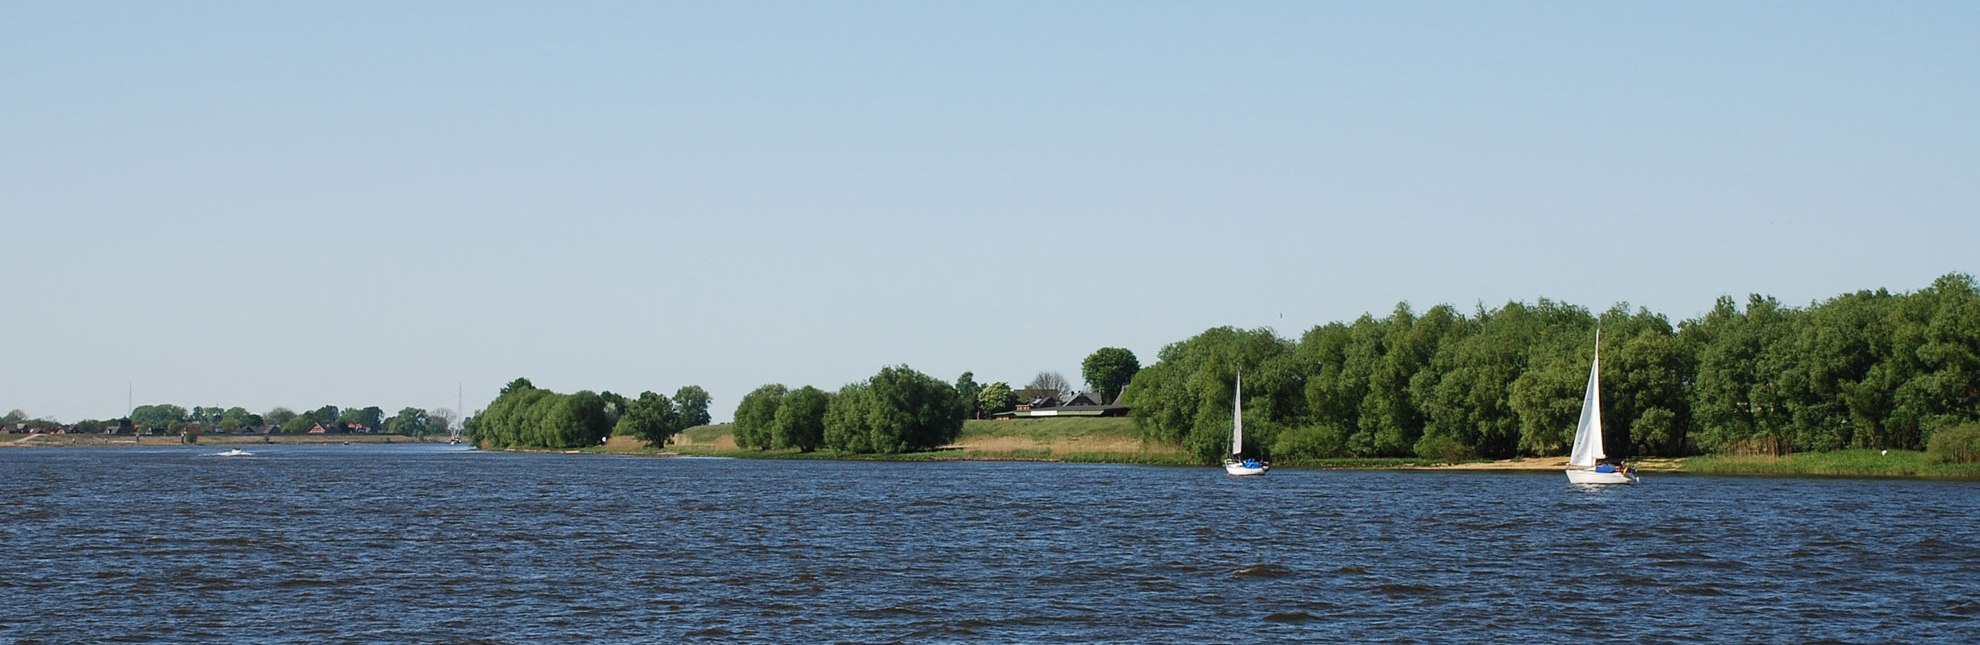 Segelboote segeln auf der Elbe in der Nähe von Geesthacht